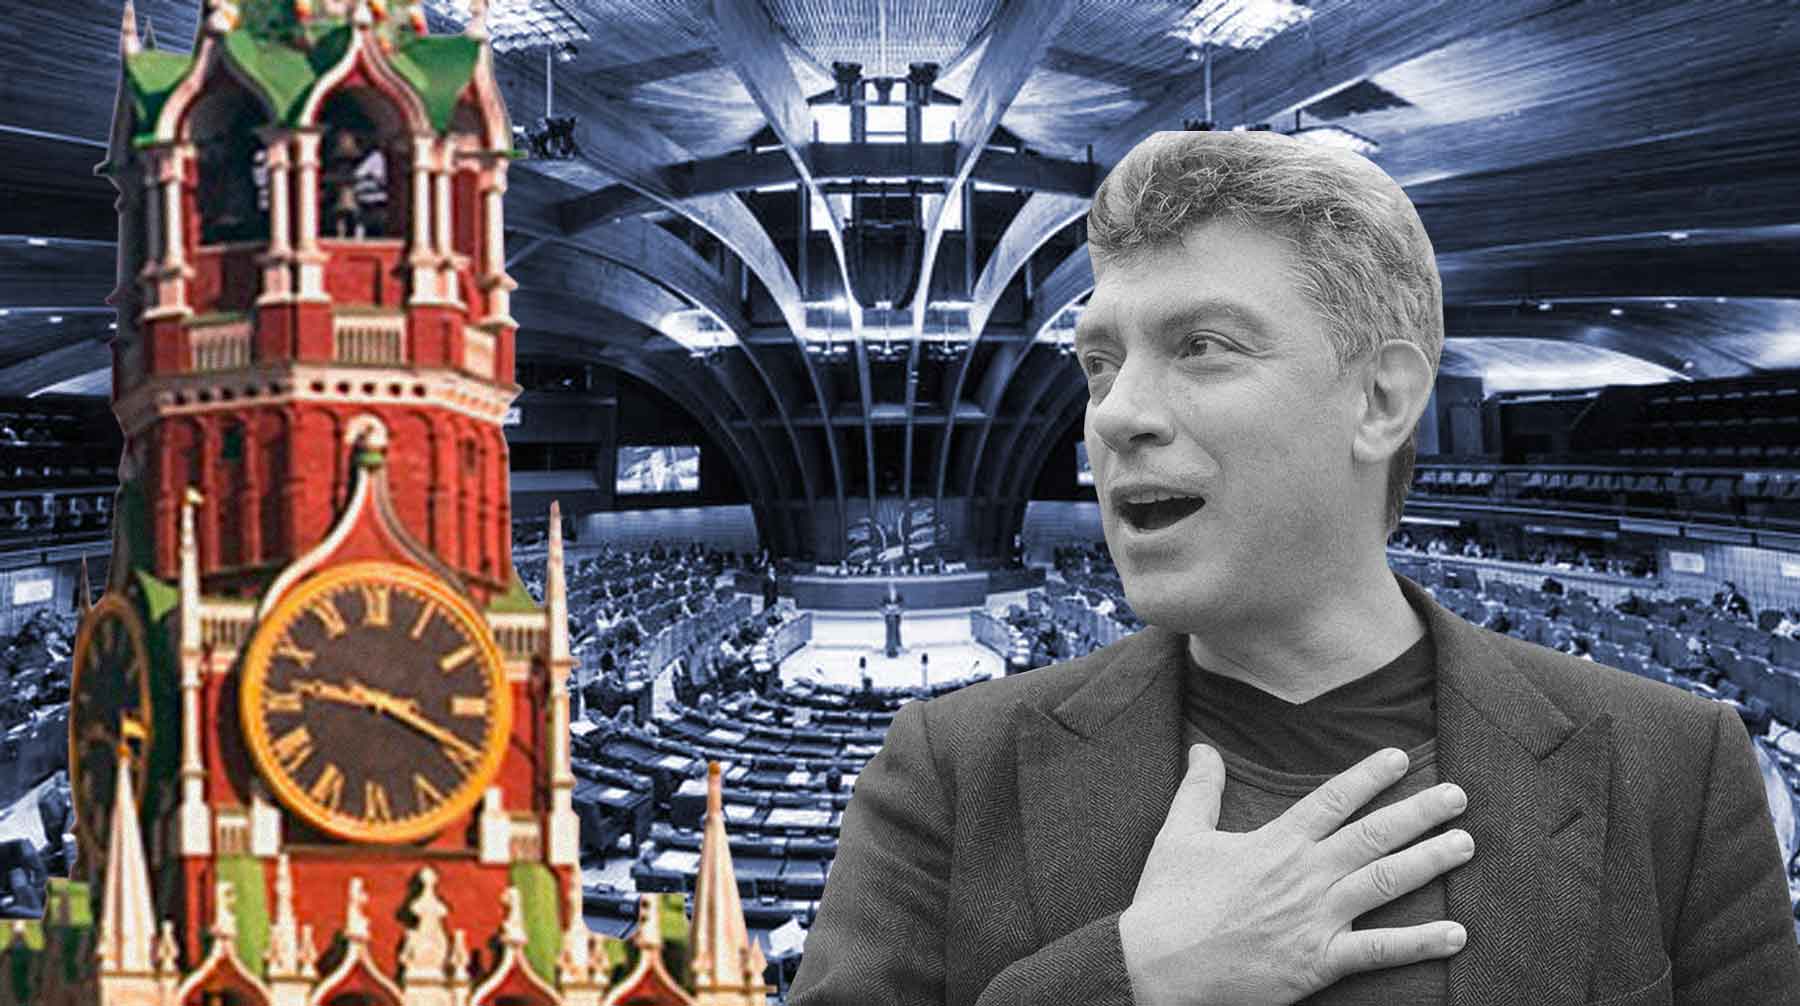 Ассамблея ждет российских парламентариев на июньской сессии, чтобы обсудить убийство Бориса Немцова Коллаж: © Daily Storm